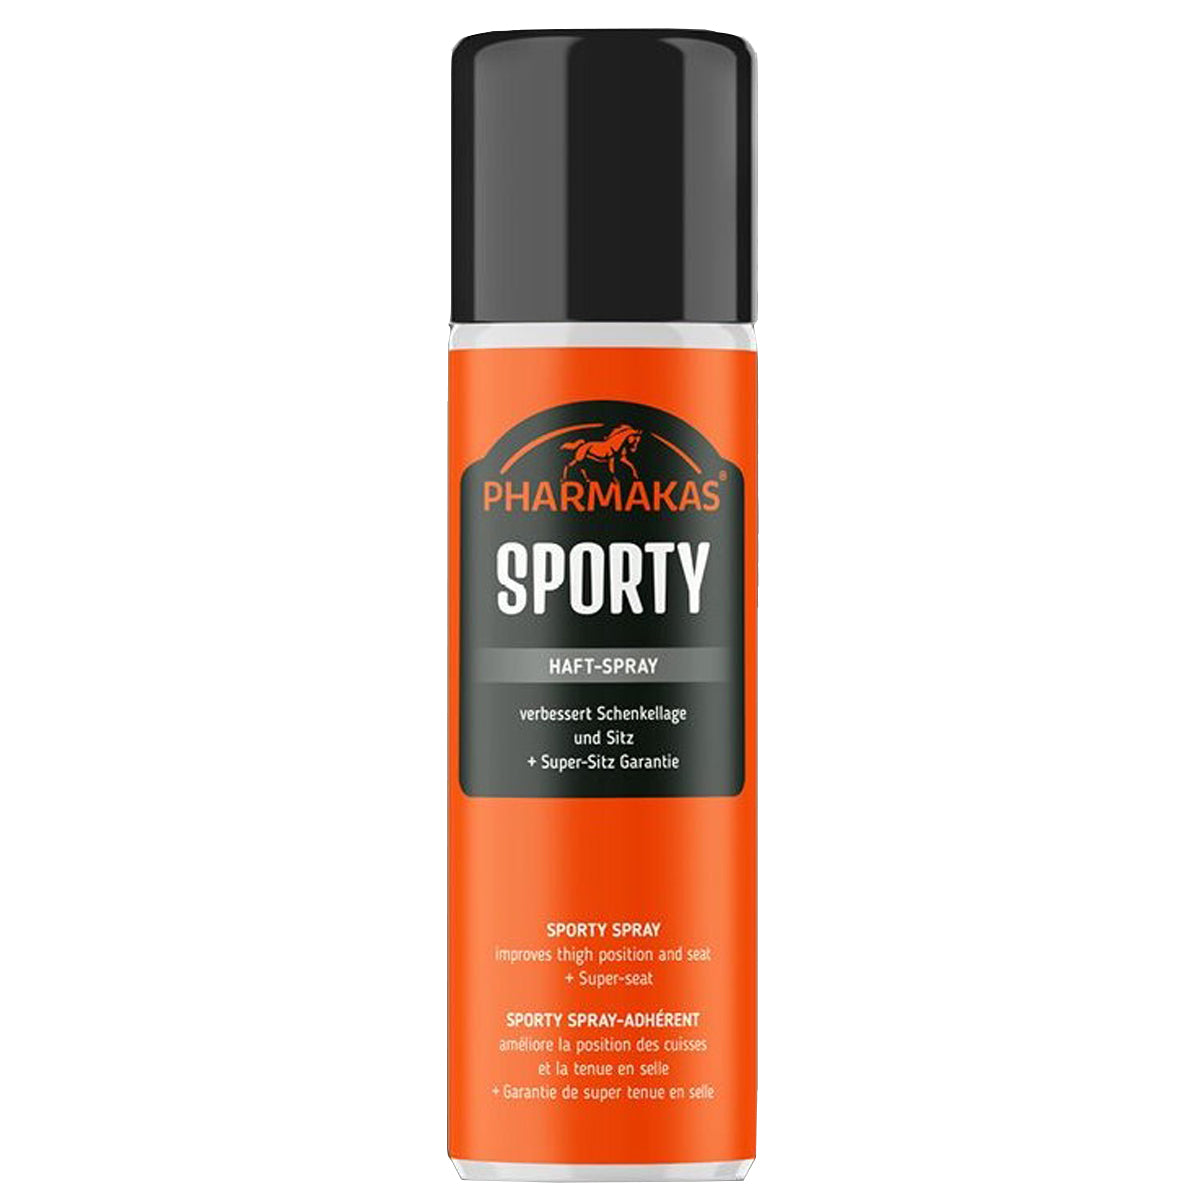 Pharmakas Sporty Spray